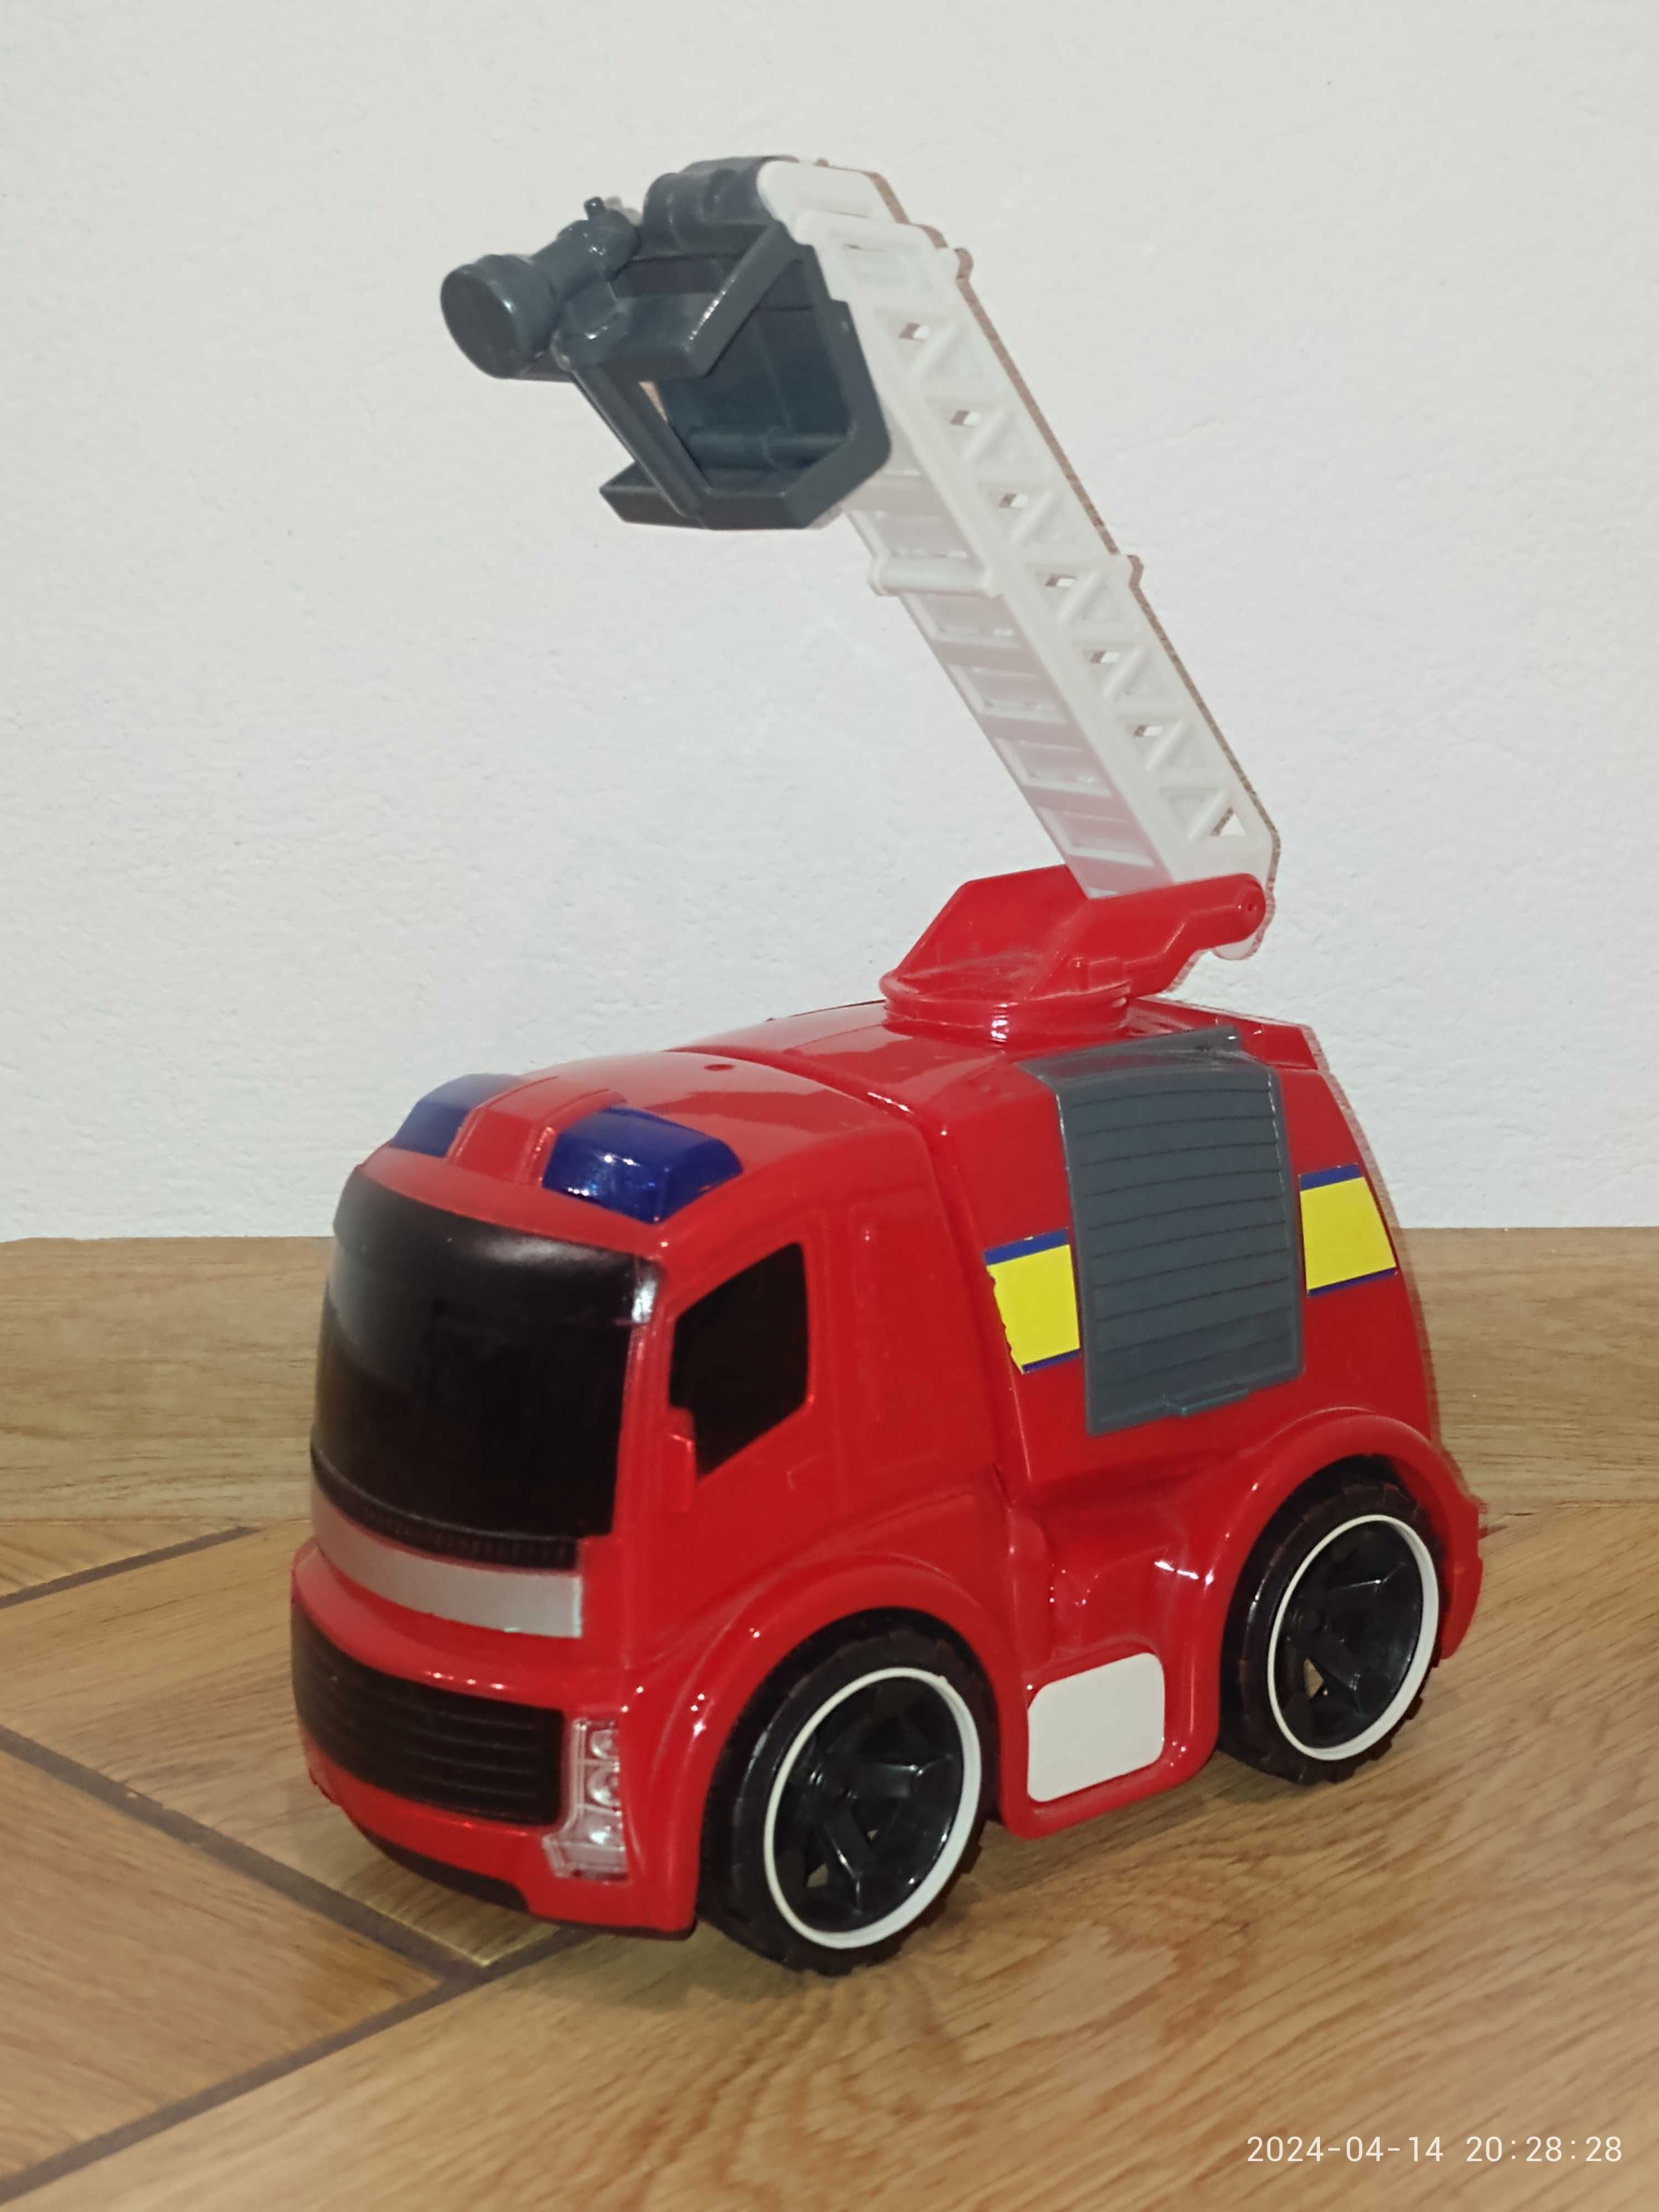 3 zabawki dla chłopca (straż pożarna, helikopter, koparka)